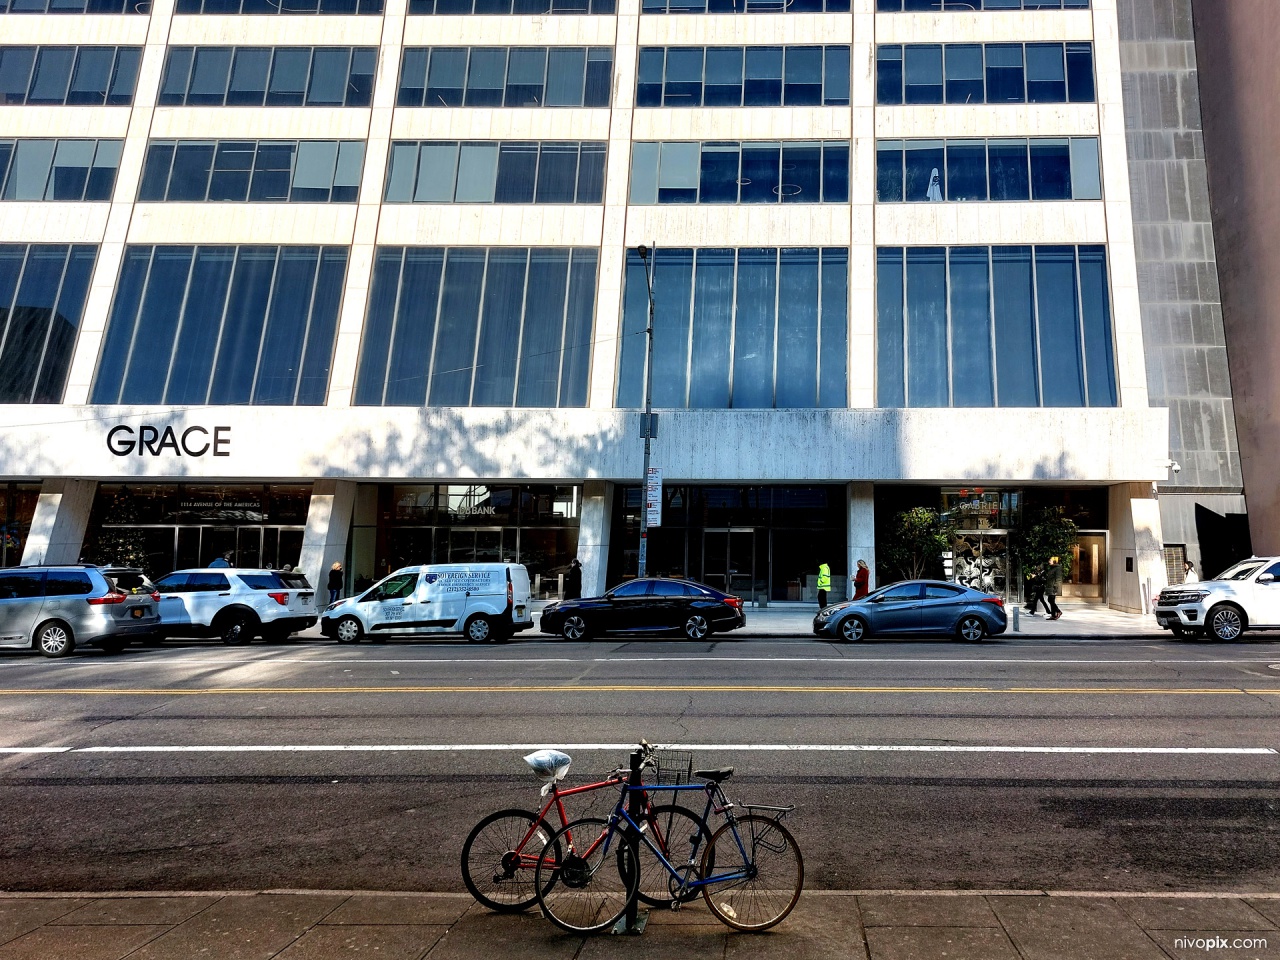 W. R. Grace Building